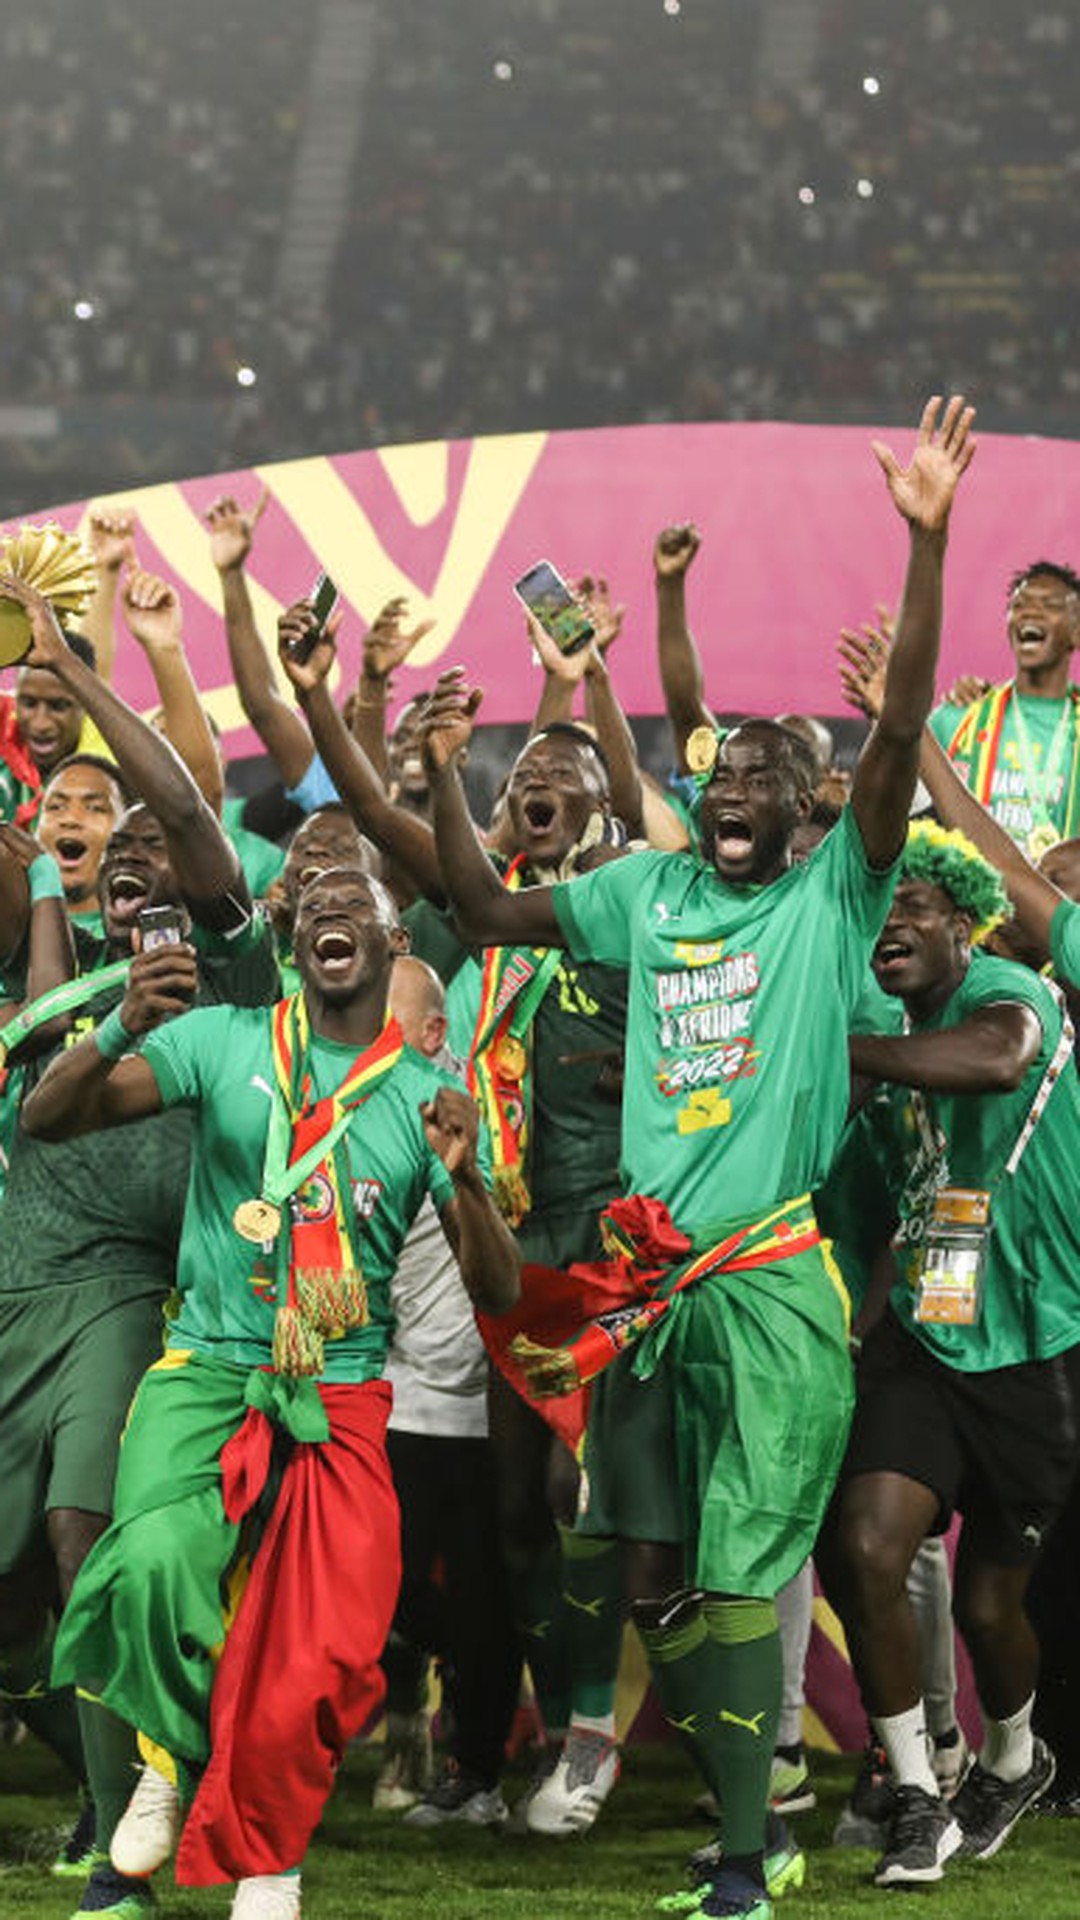 Gabão x Quênia, Eliminatórias da CAF: 1ª Fase, Grupo F, Copa do Mundo da  FIFA 26™, Jogo completo